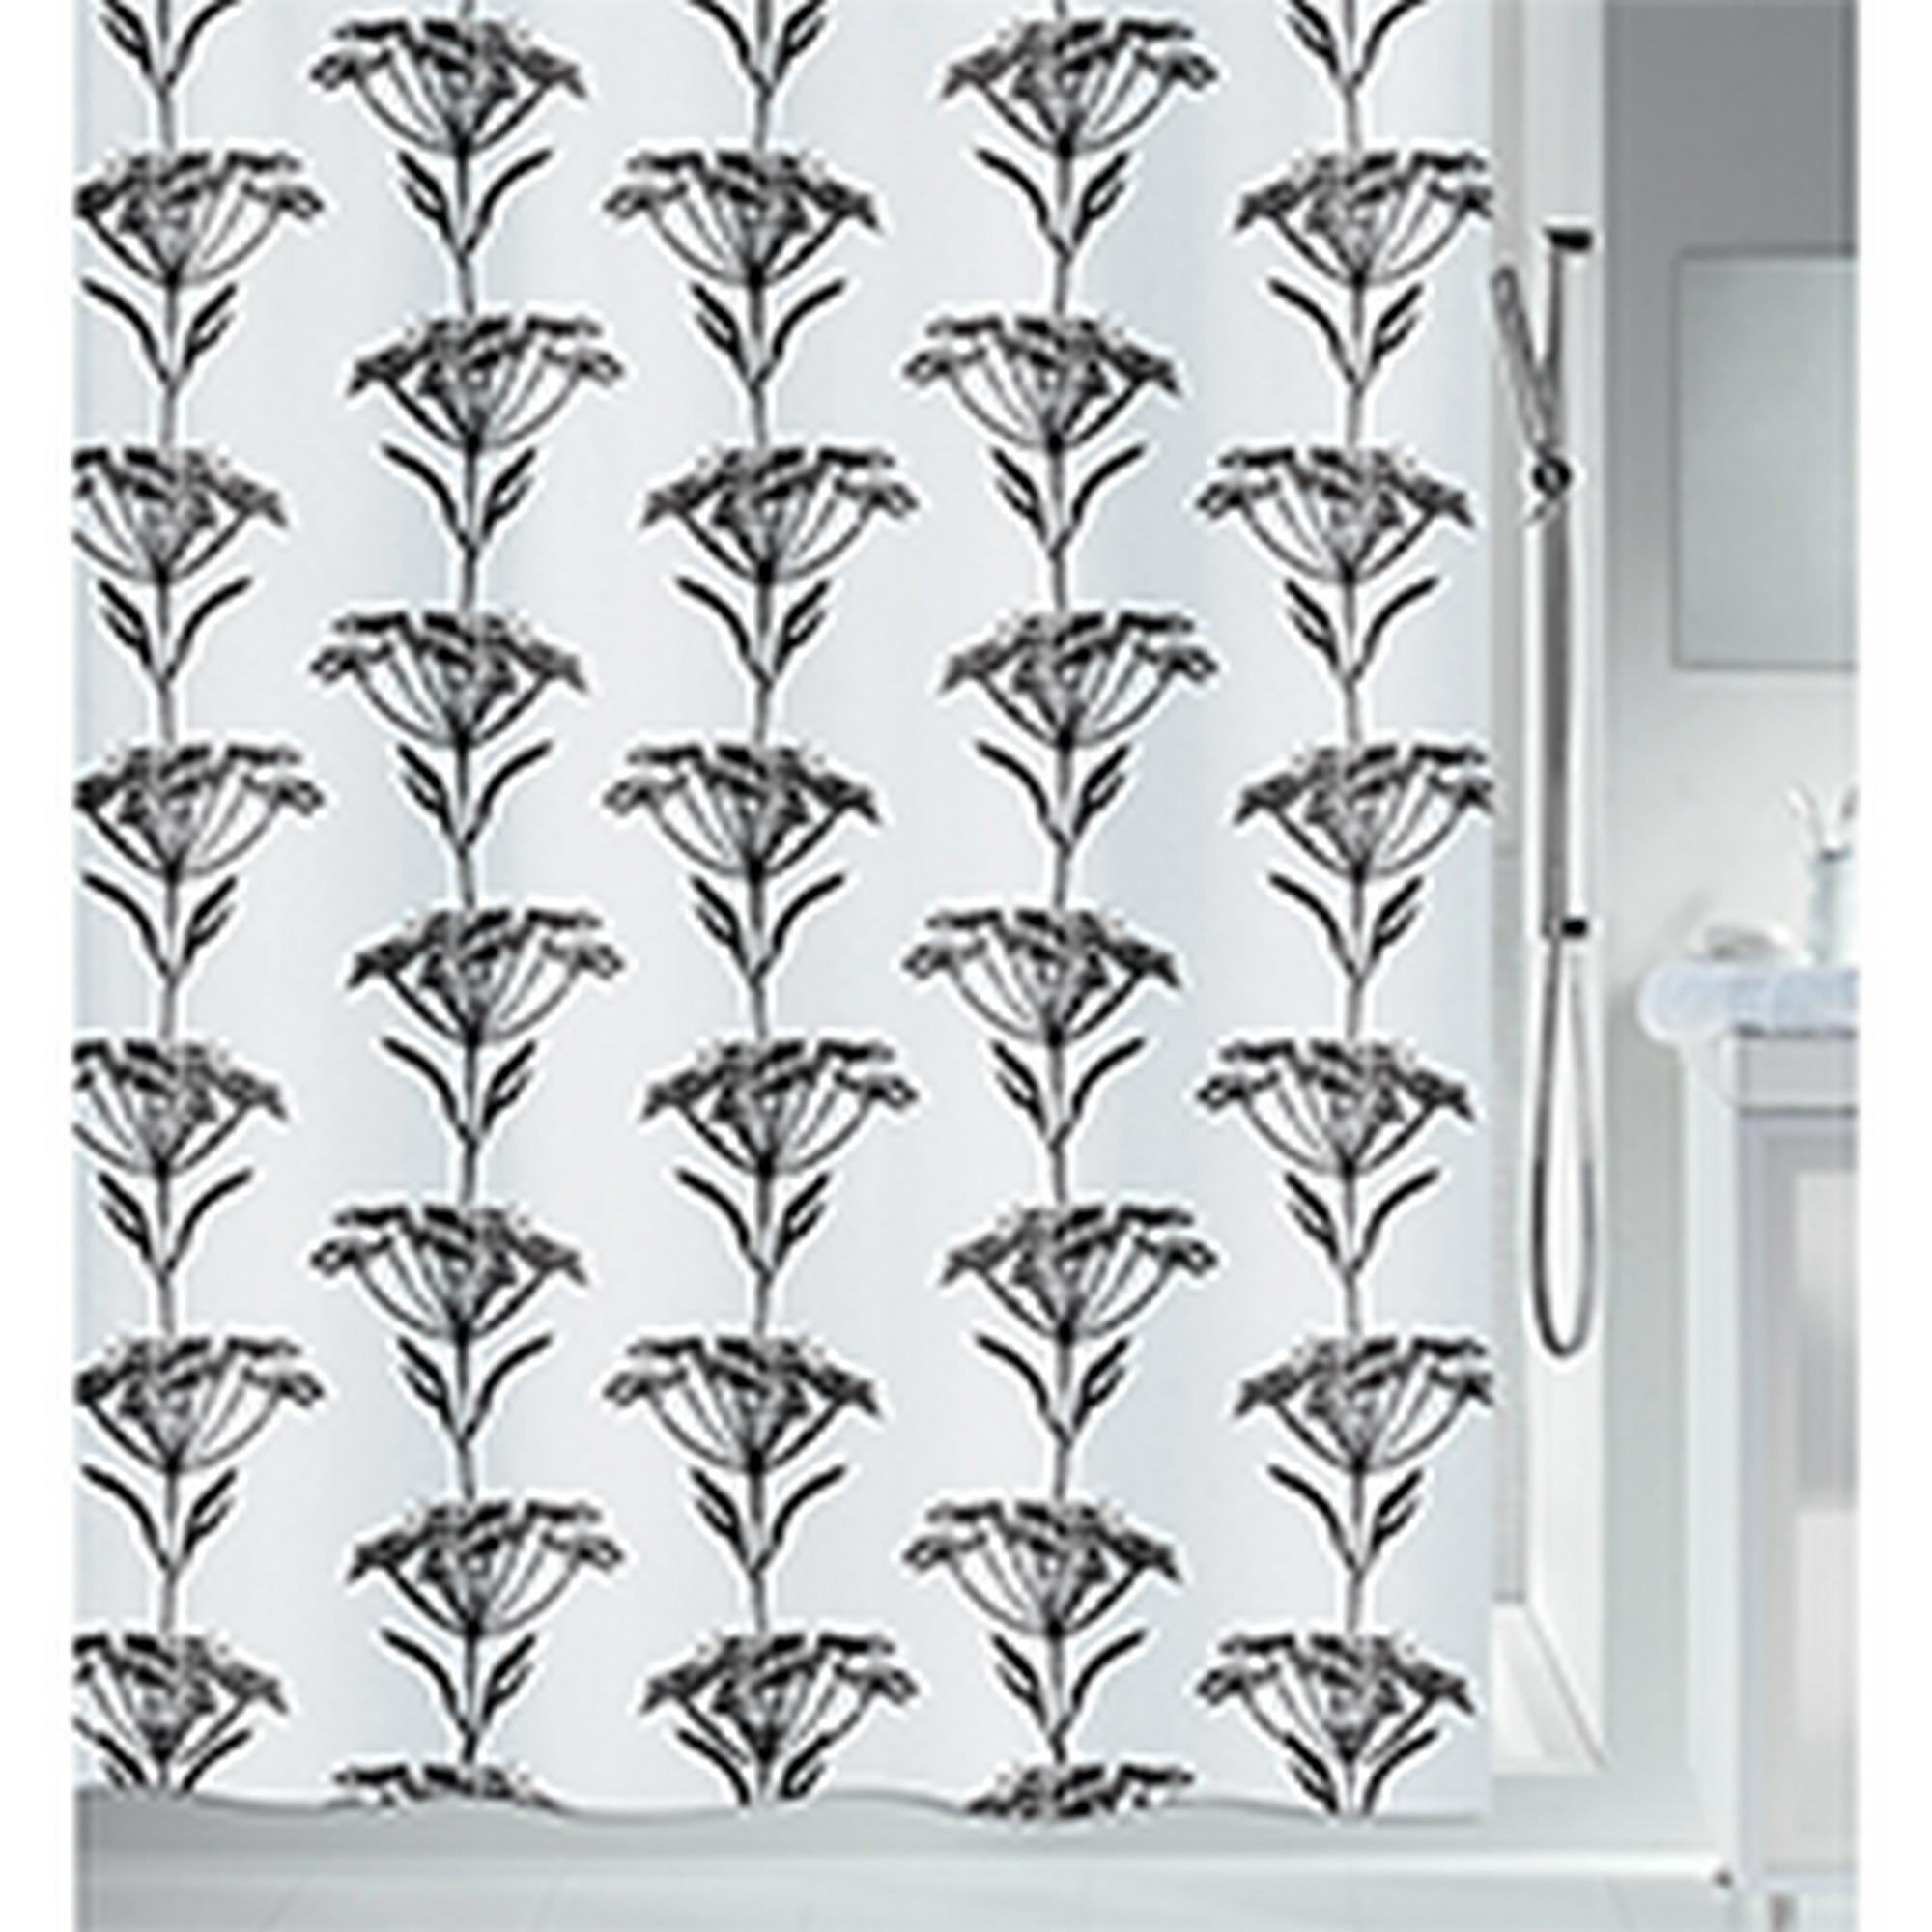 Duschvorhang 'Naturdesign' Textil schwarz/weiß 180 x 200 cm + product picture